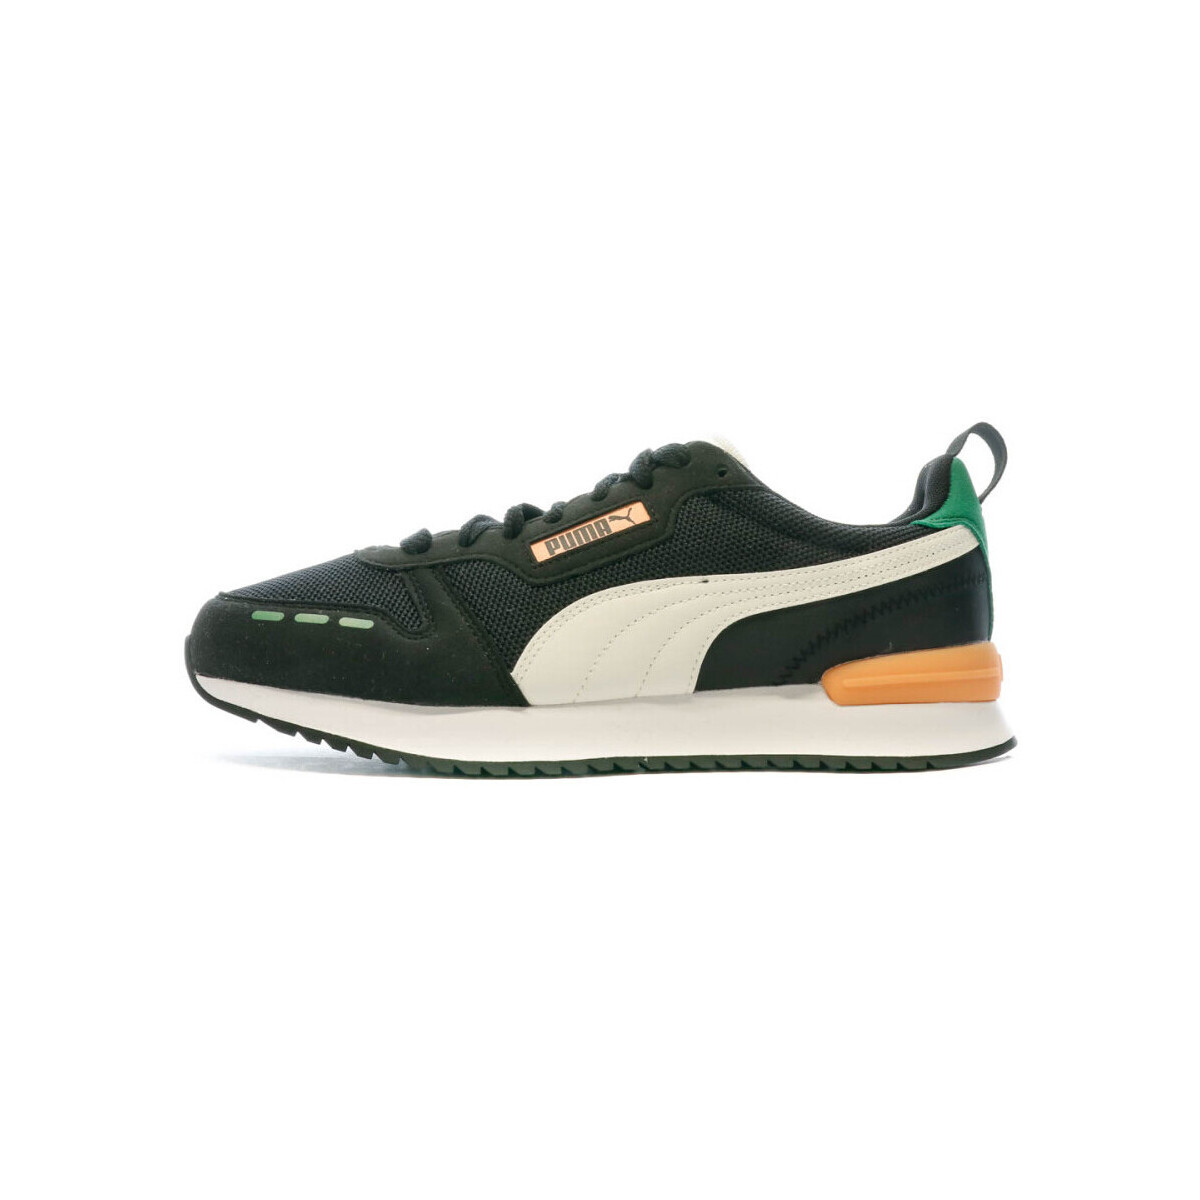 Schuhe Herren Sneaker Low Puma 373117-73 Schwarz